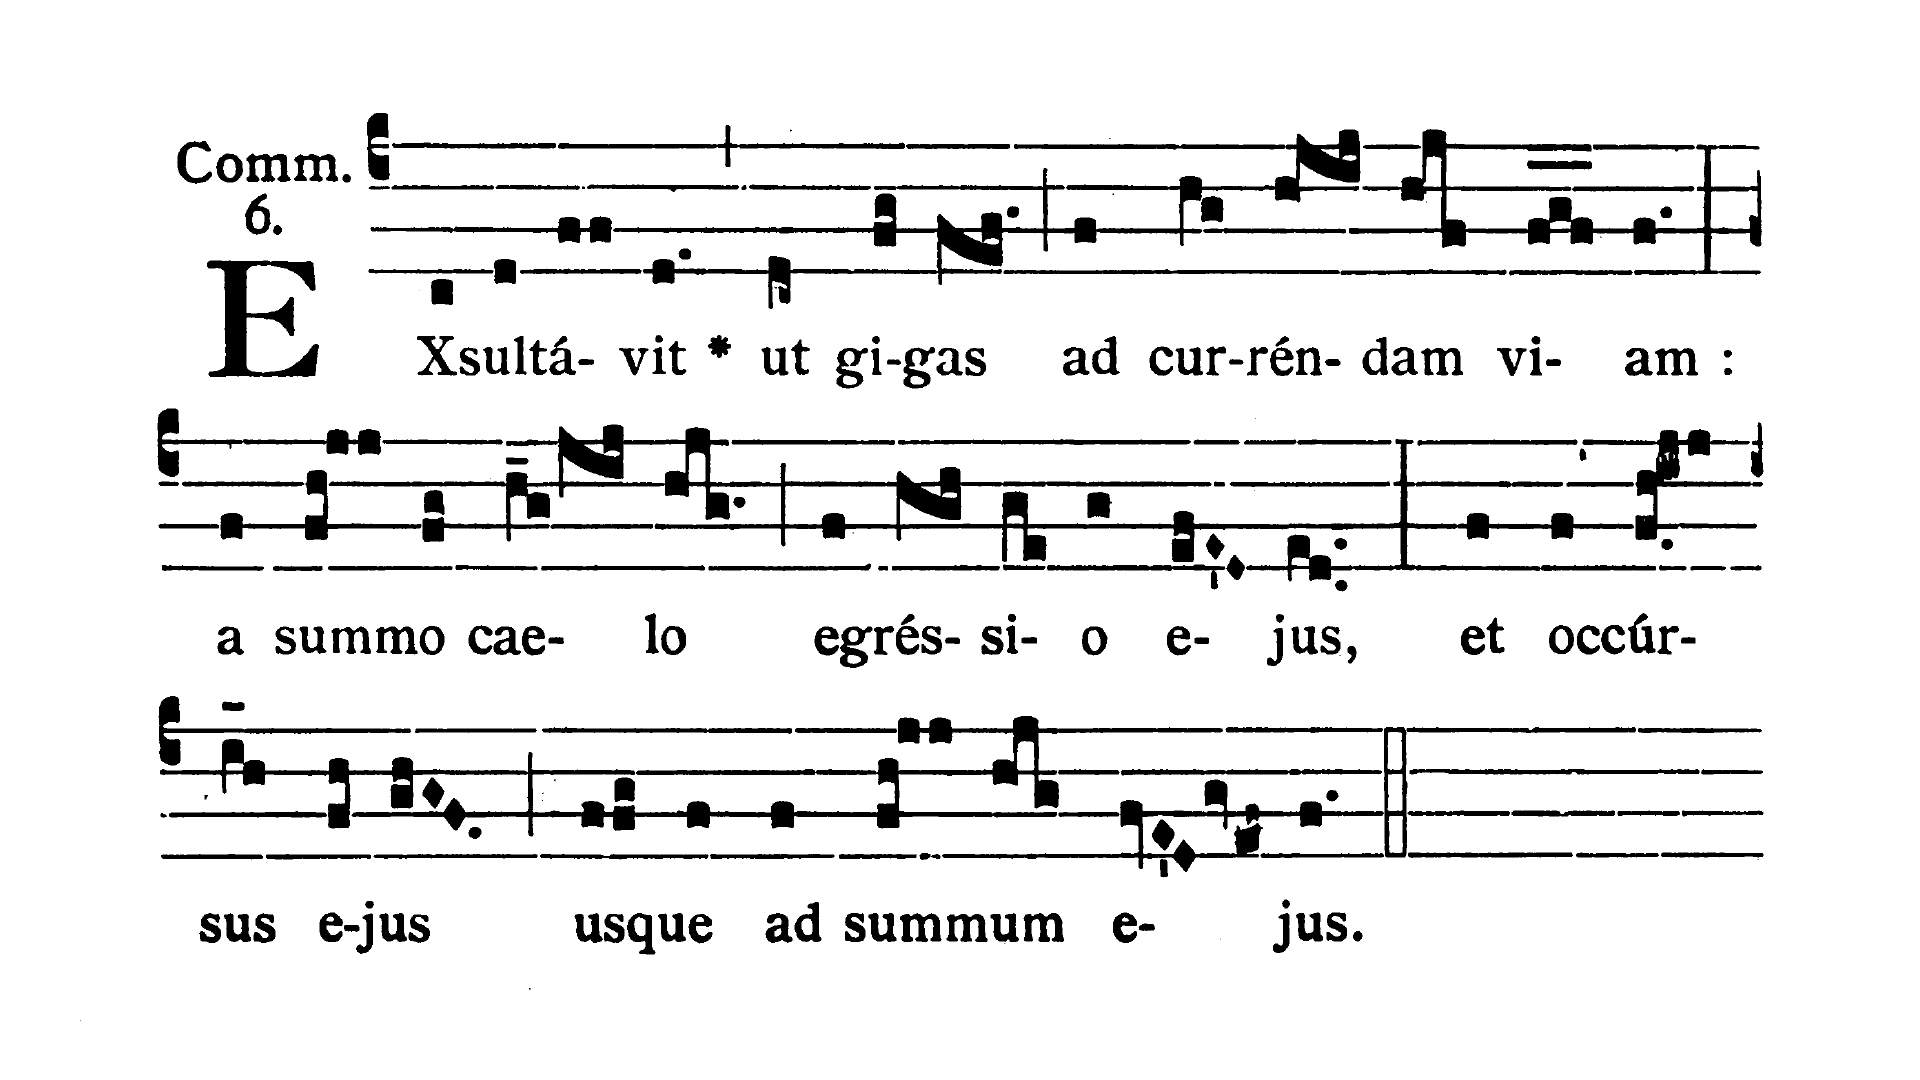 Sabbato Quatuor Temporum Adventus - Communio (Exsultavit)